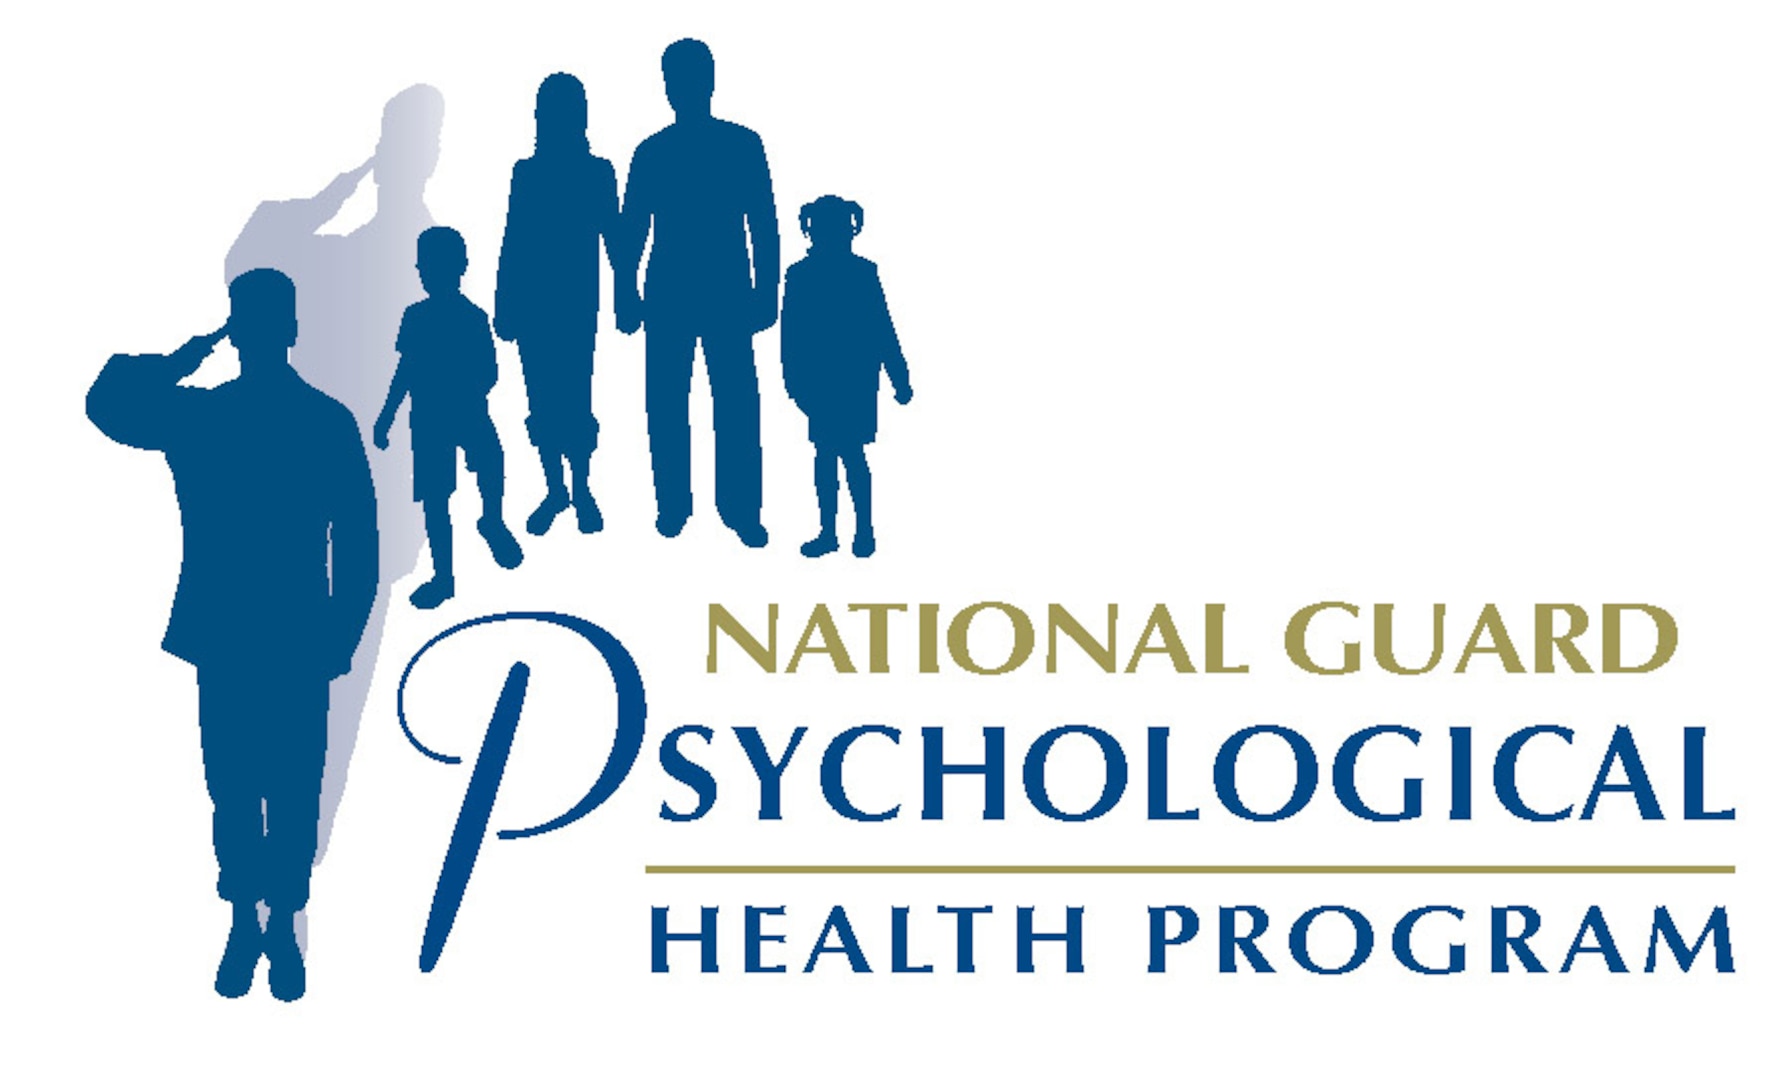 National Guard Psychological Health Program logo